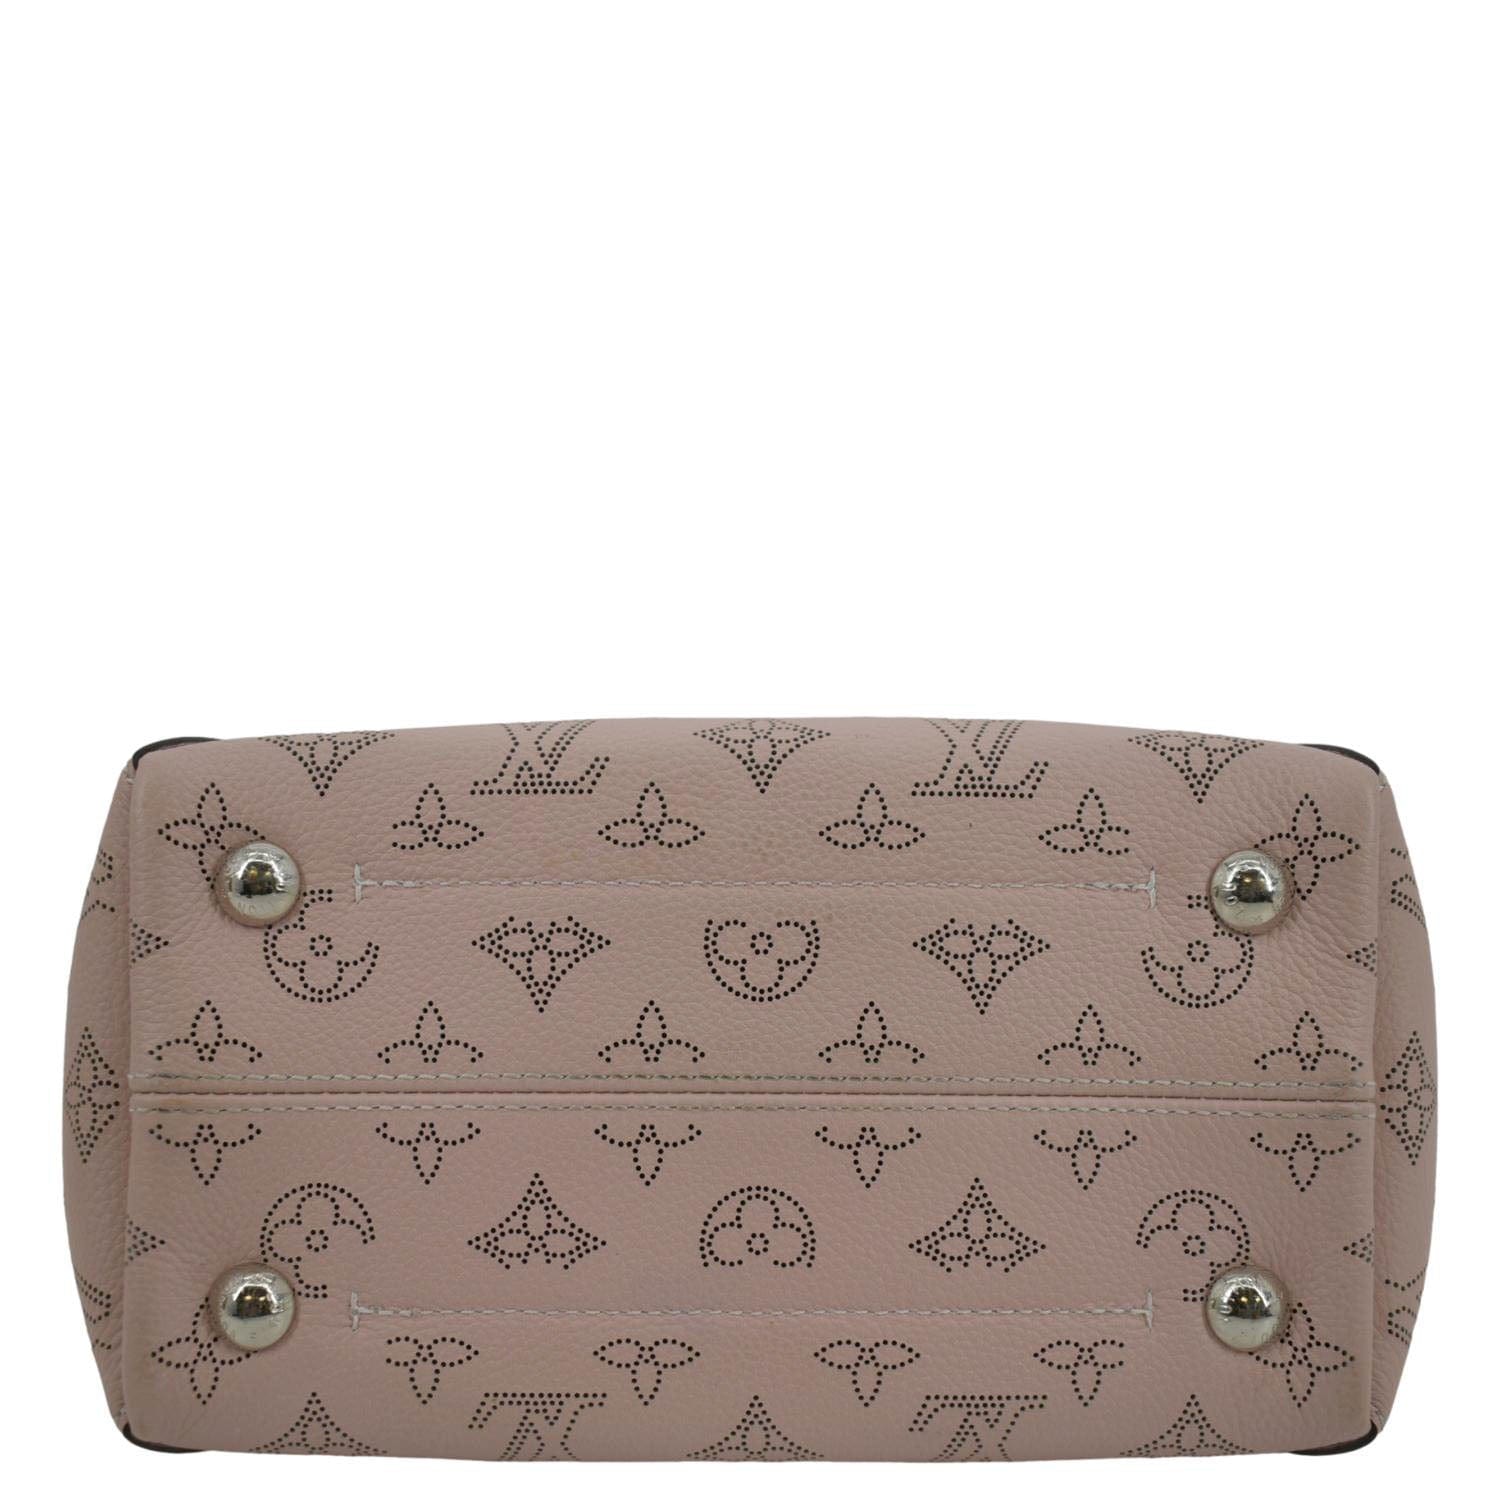 Louis Vuitton Hina Handbag Mahina Leather PM Pink 22126910